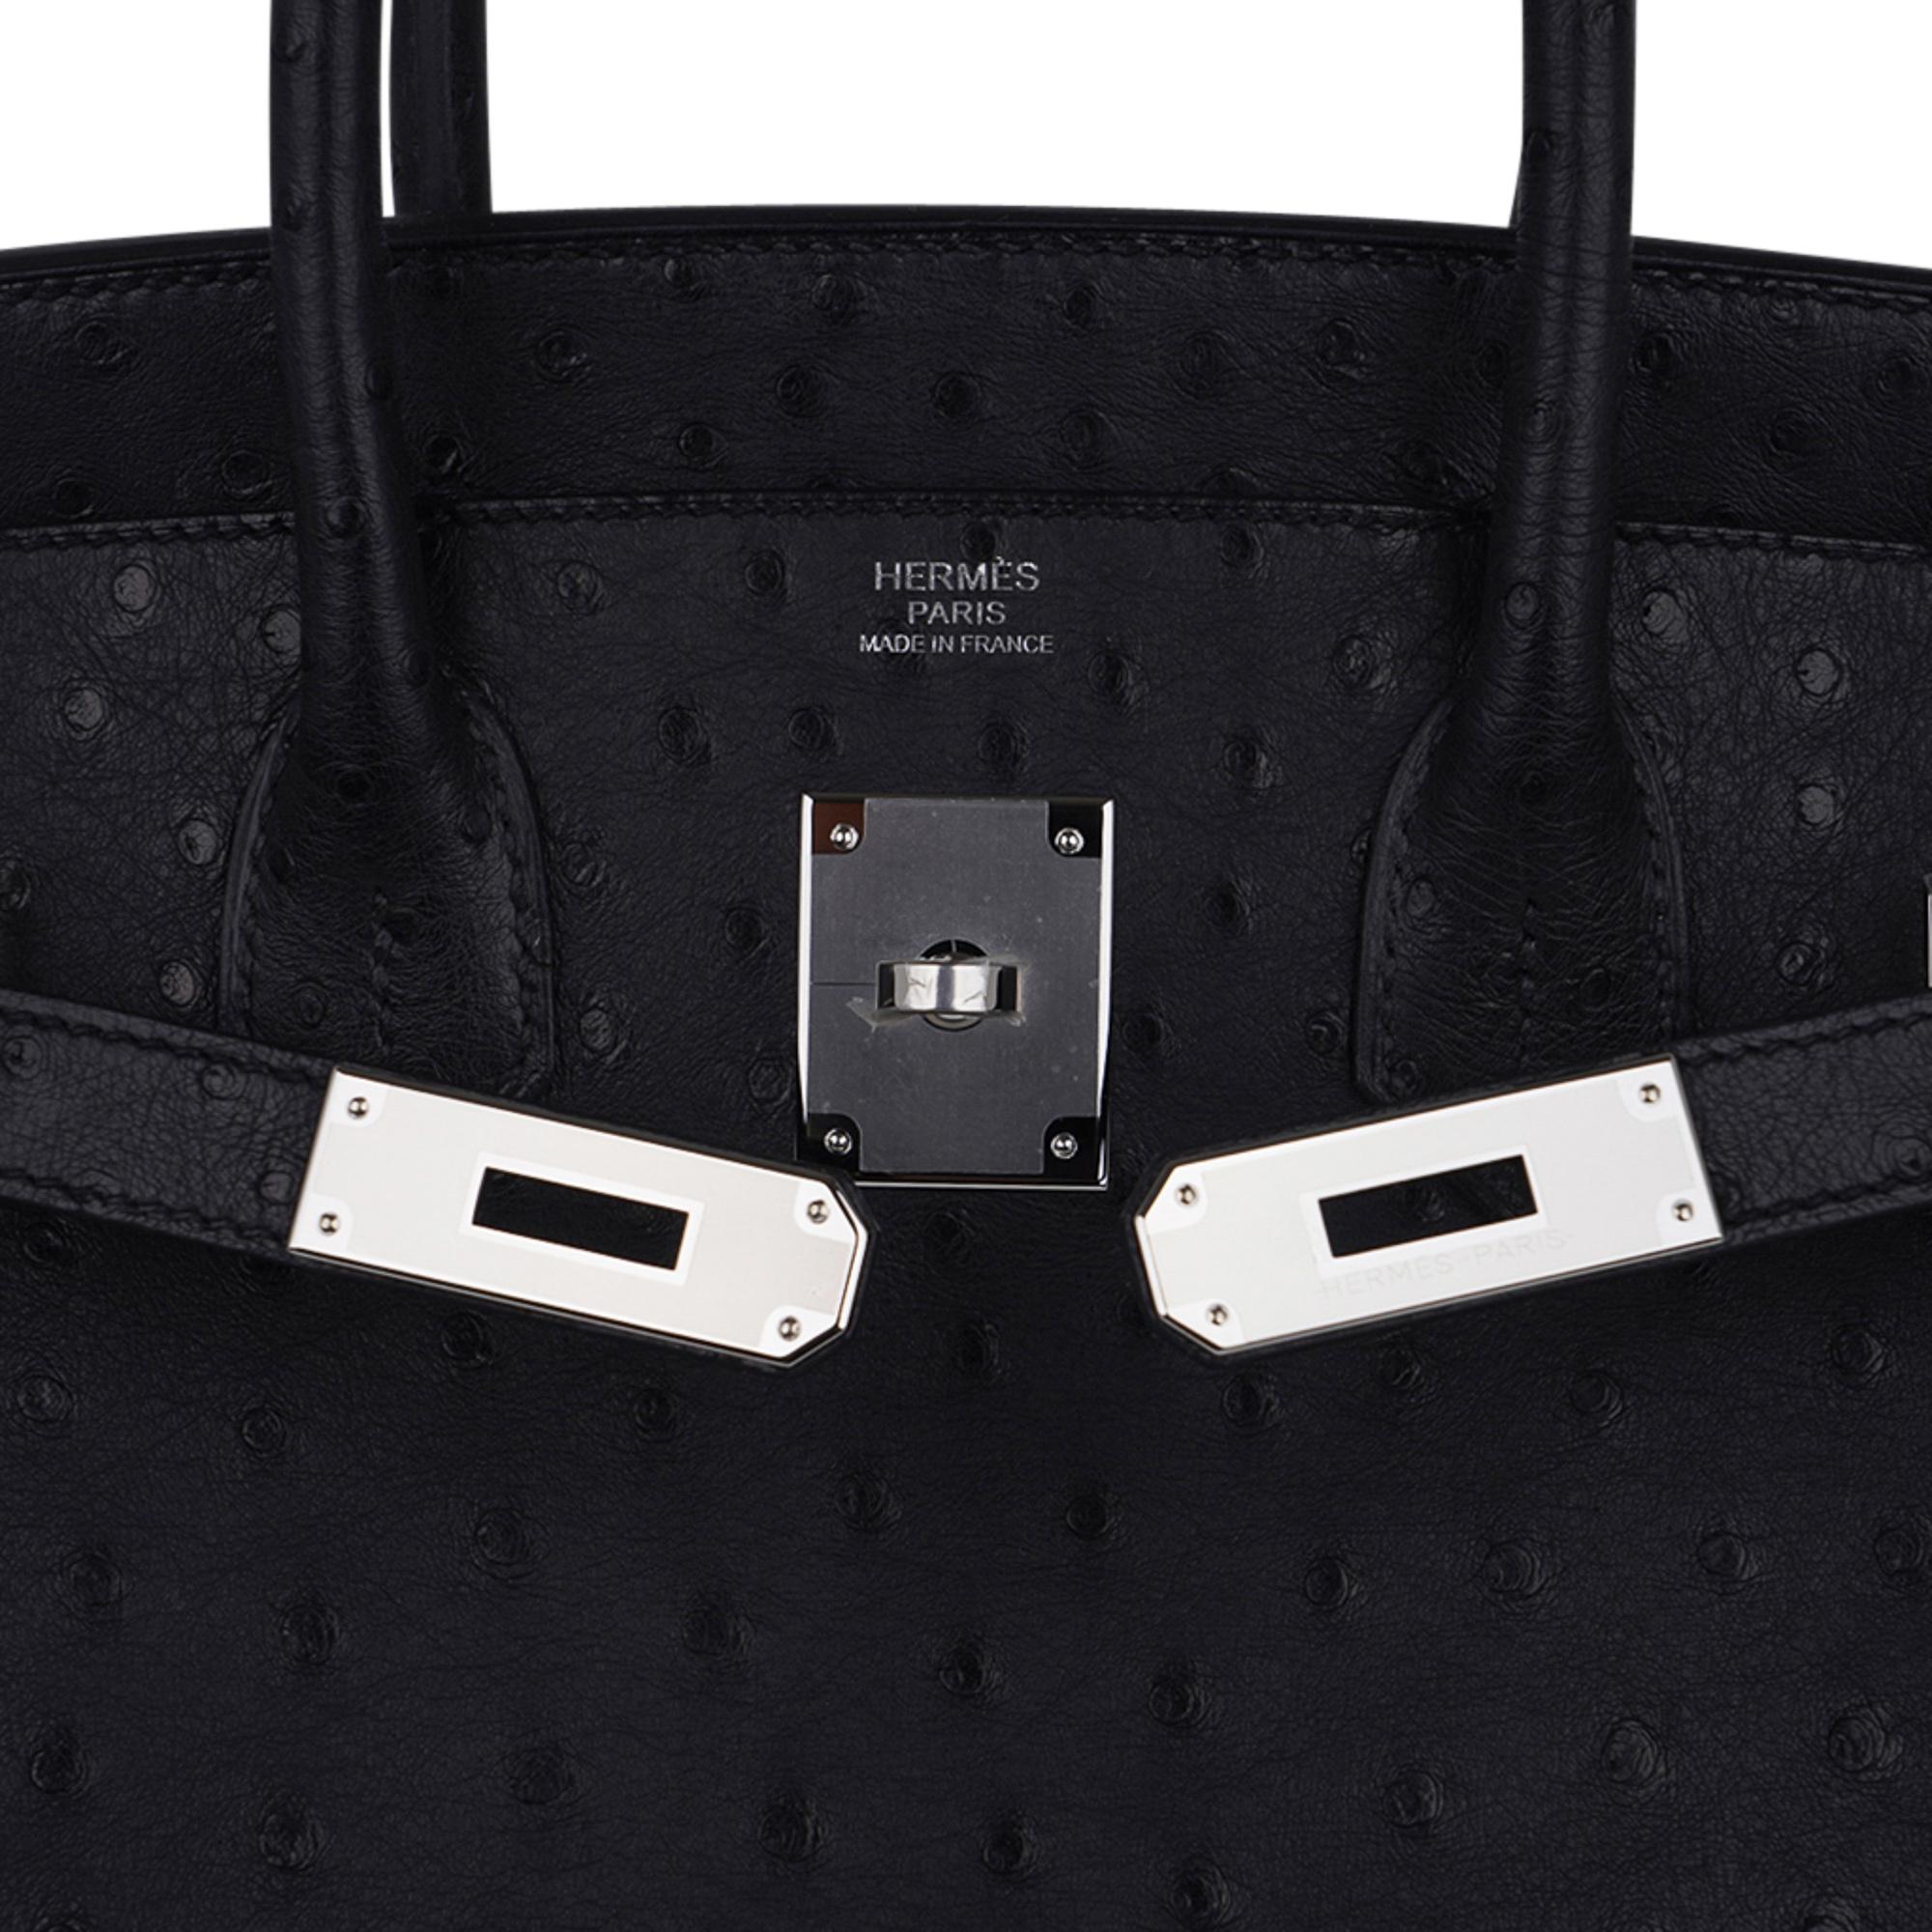 Women's Hermes Birkin 30 Ostrich Bag Black Palladium Hardware Perfect Year Round Neutral